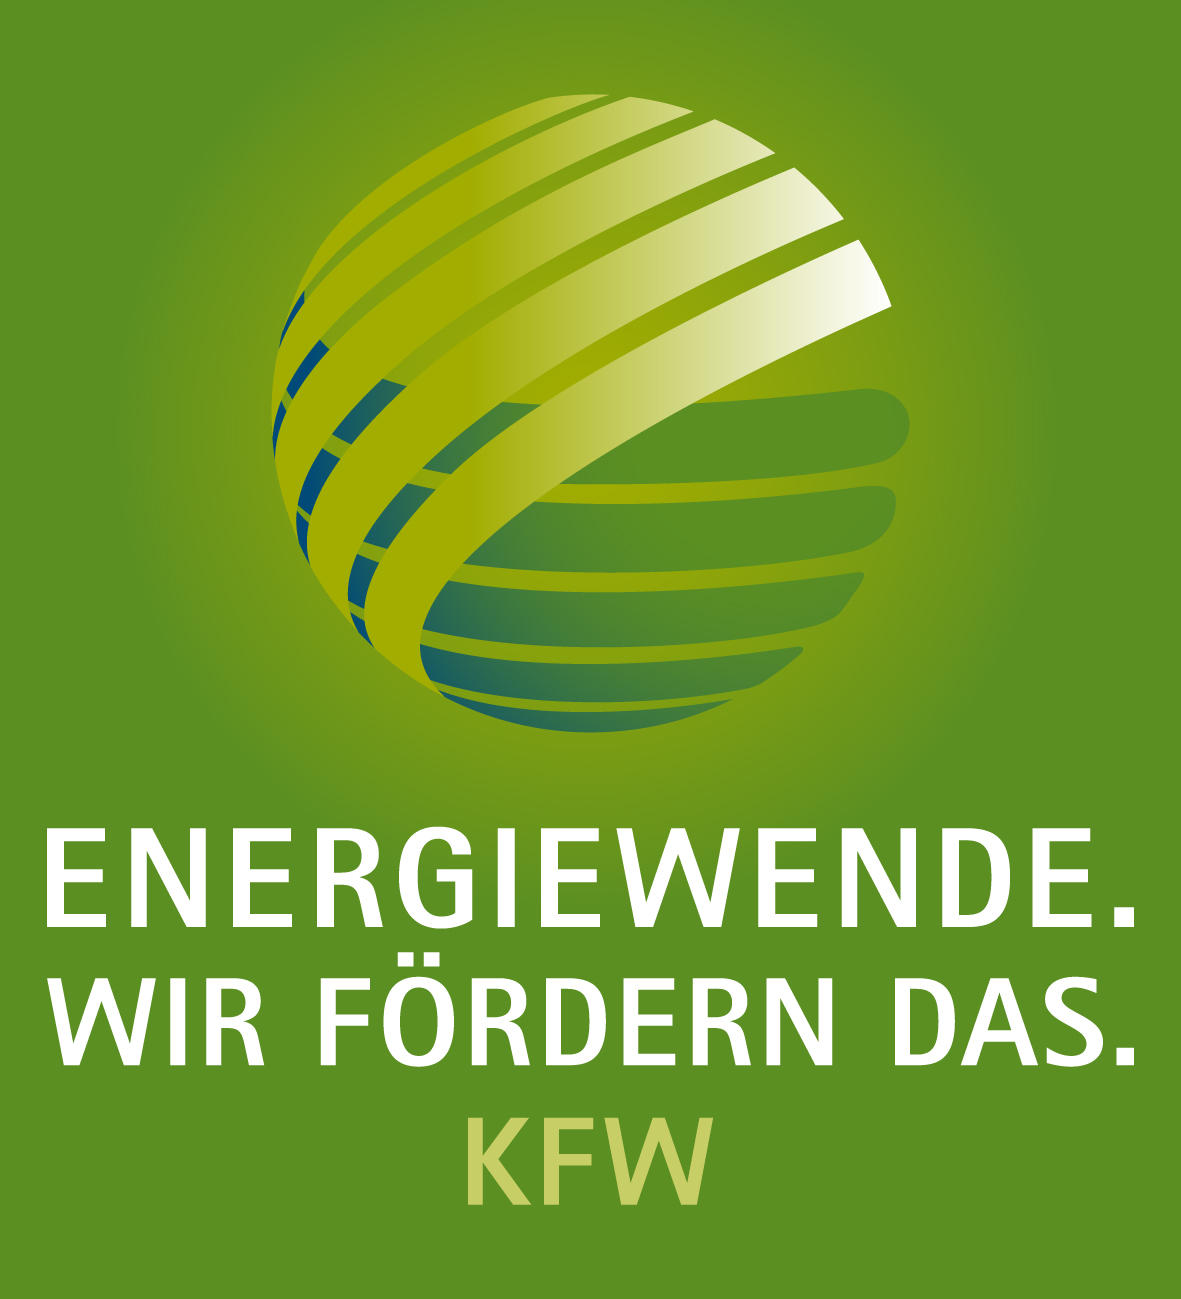 KfW-Aktionsplan Energiewende Schwerpunkt auf Förderung von Umwelt- und Klimaschutz KFW-AKTIONSPLAN ENERGIEWENDE Erneuerbare Energien Energieeffizienz Innovation für Energiewende KfW-Programm Offshore